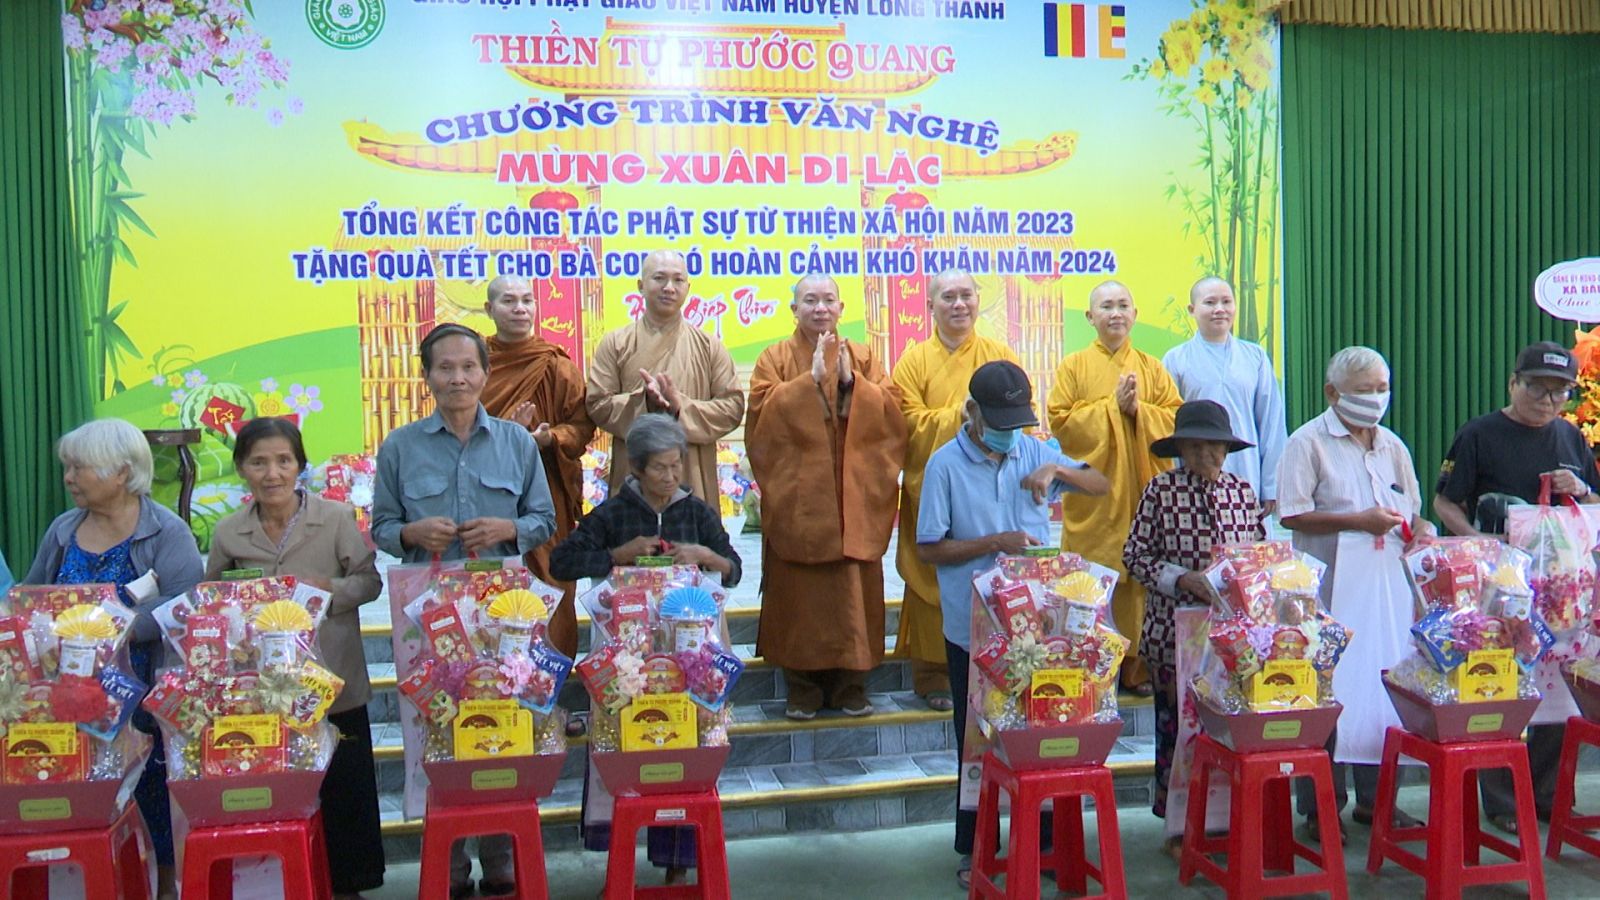 Long Thành: Thiền tự Phước Quang tổ chức lễ Tổng kết công tác Phật sự năm 2023